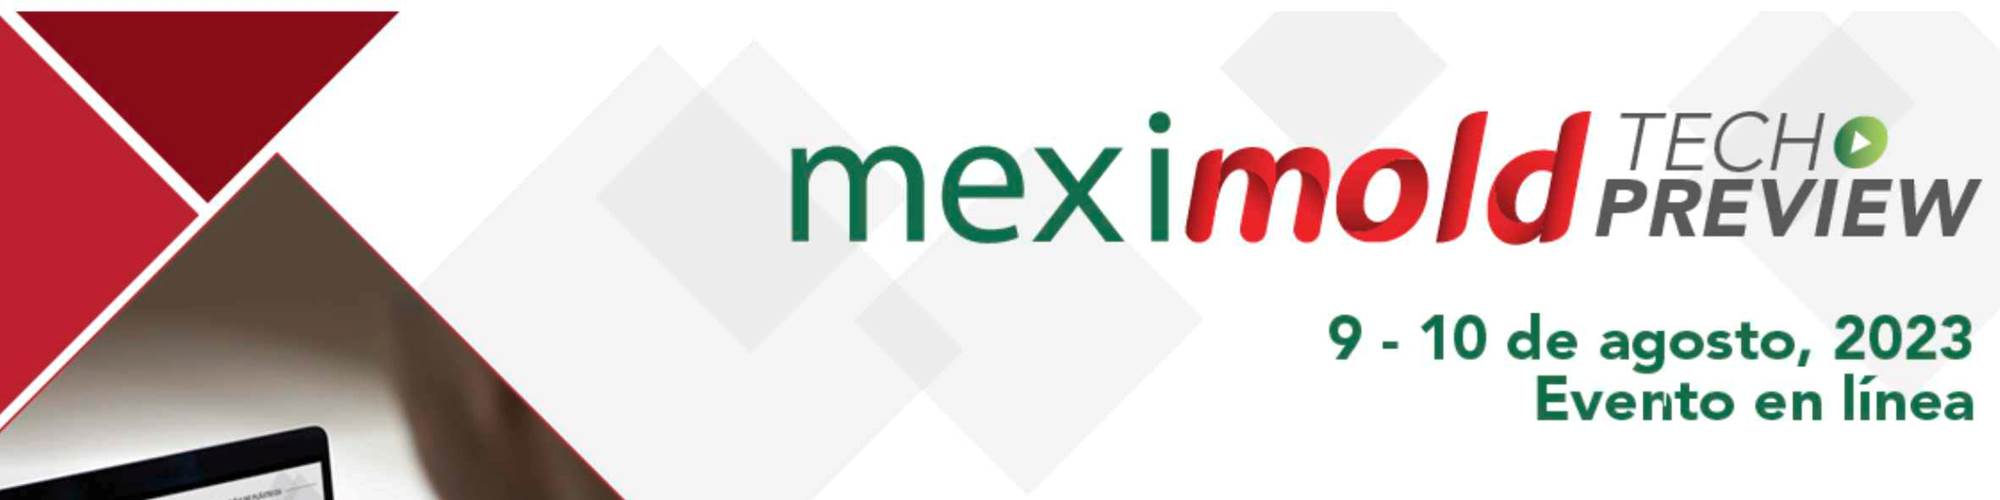 Meximold Tech Preview 2023 abre su registro para conocer un adelanto de algunas de las tecnologías que serán presentadas en Querétaro el próximo mes de octubre.